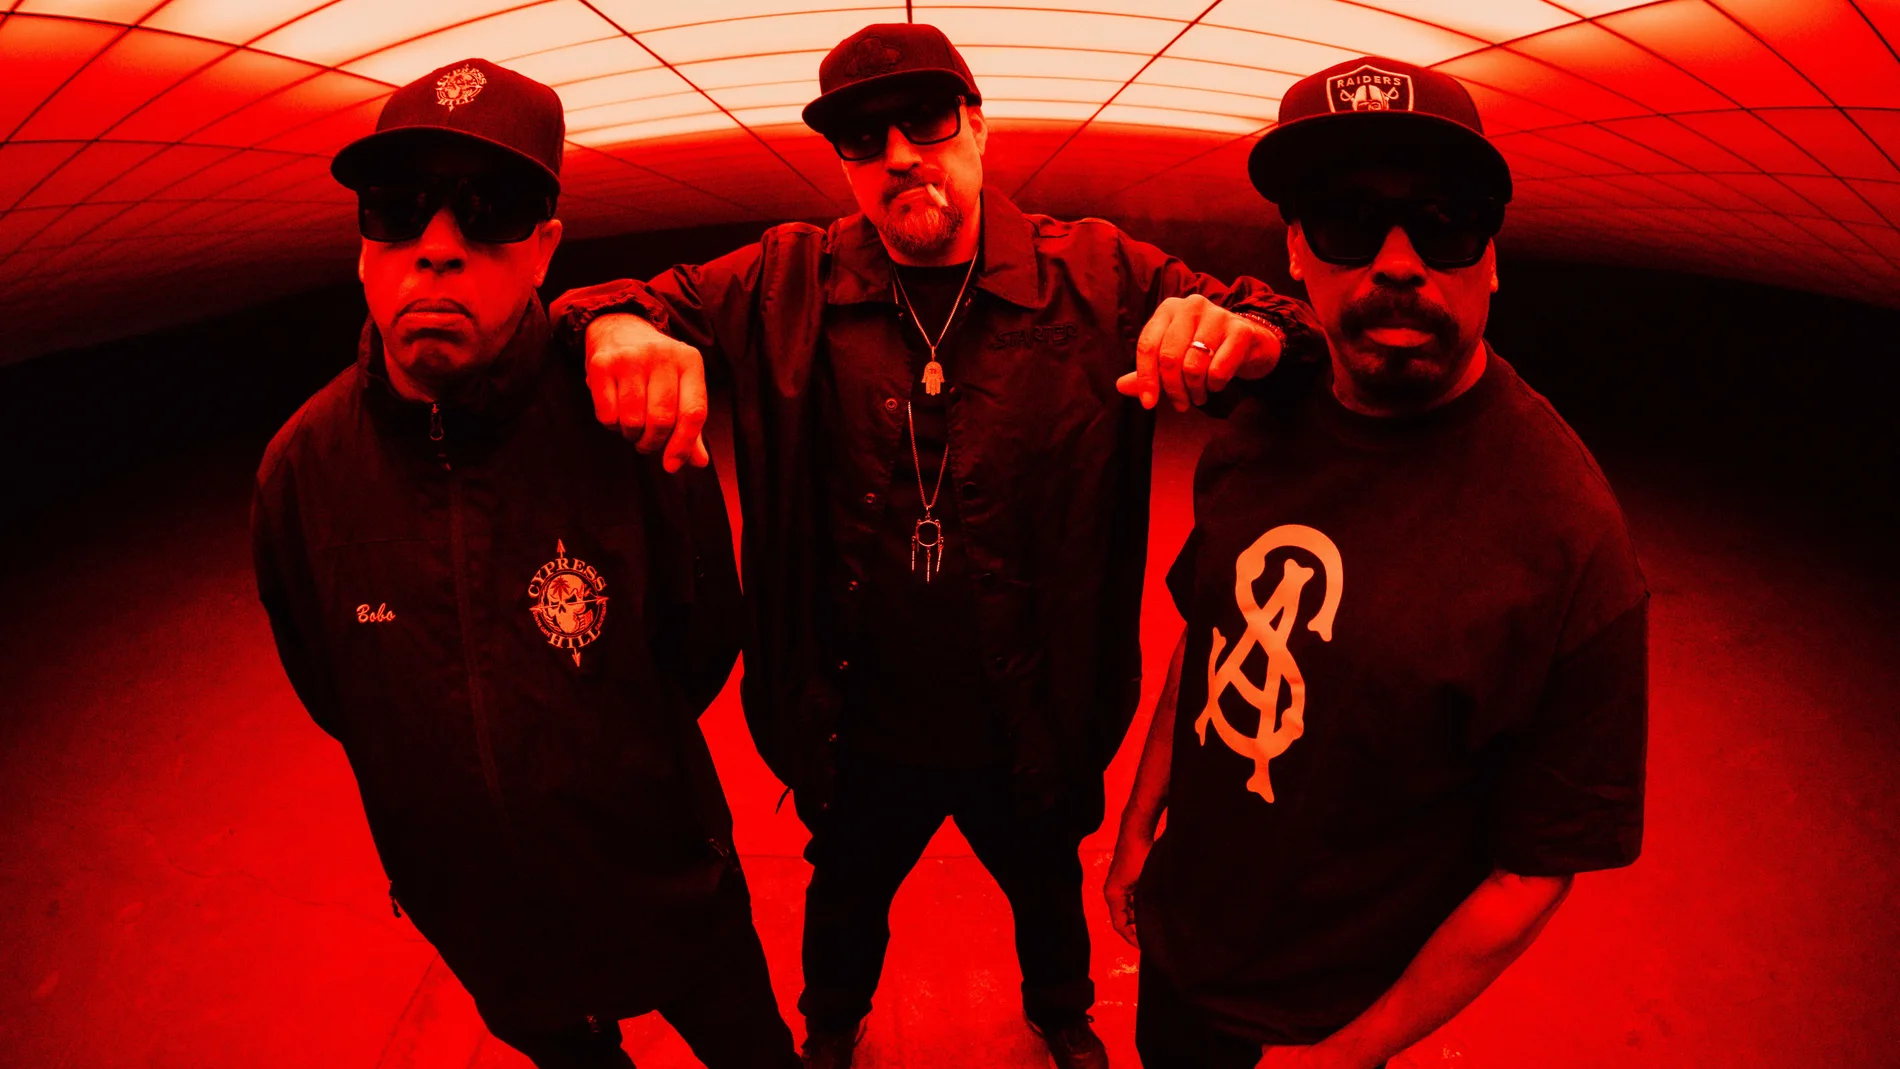 De izquierda a derecha, Eric Bobo, B-Real y Sen Dog, componentes de la banda de hip hop Cypress Hill